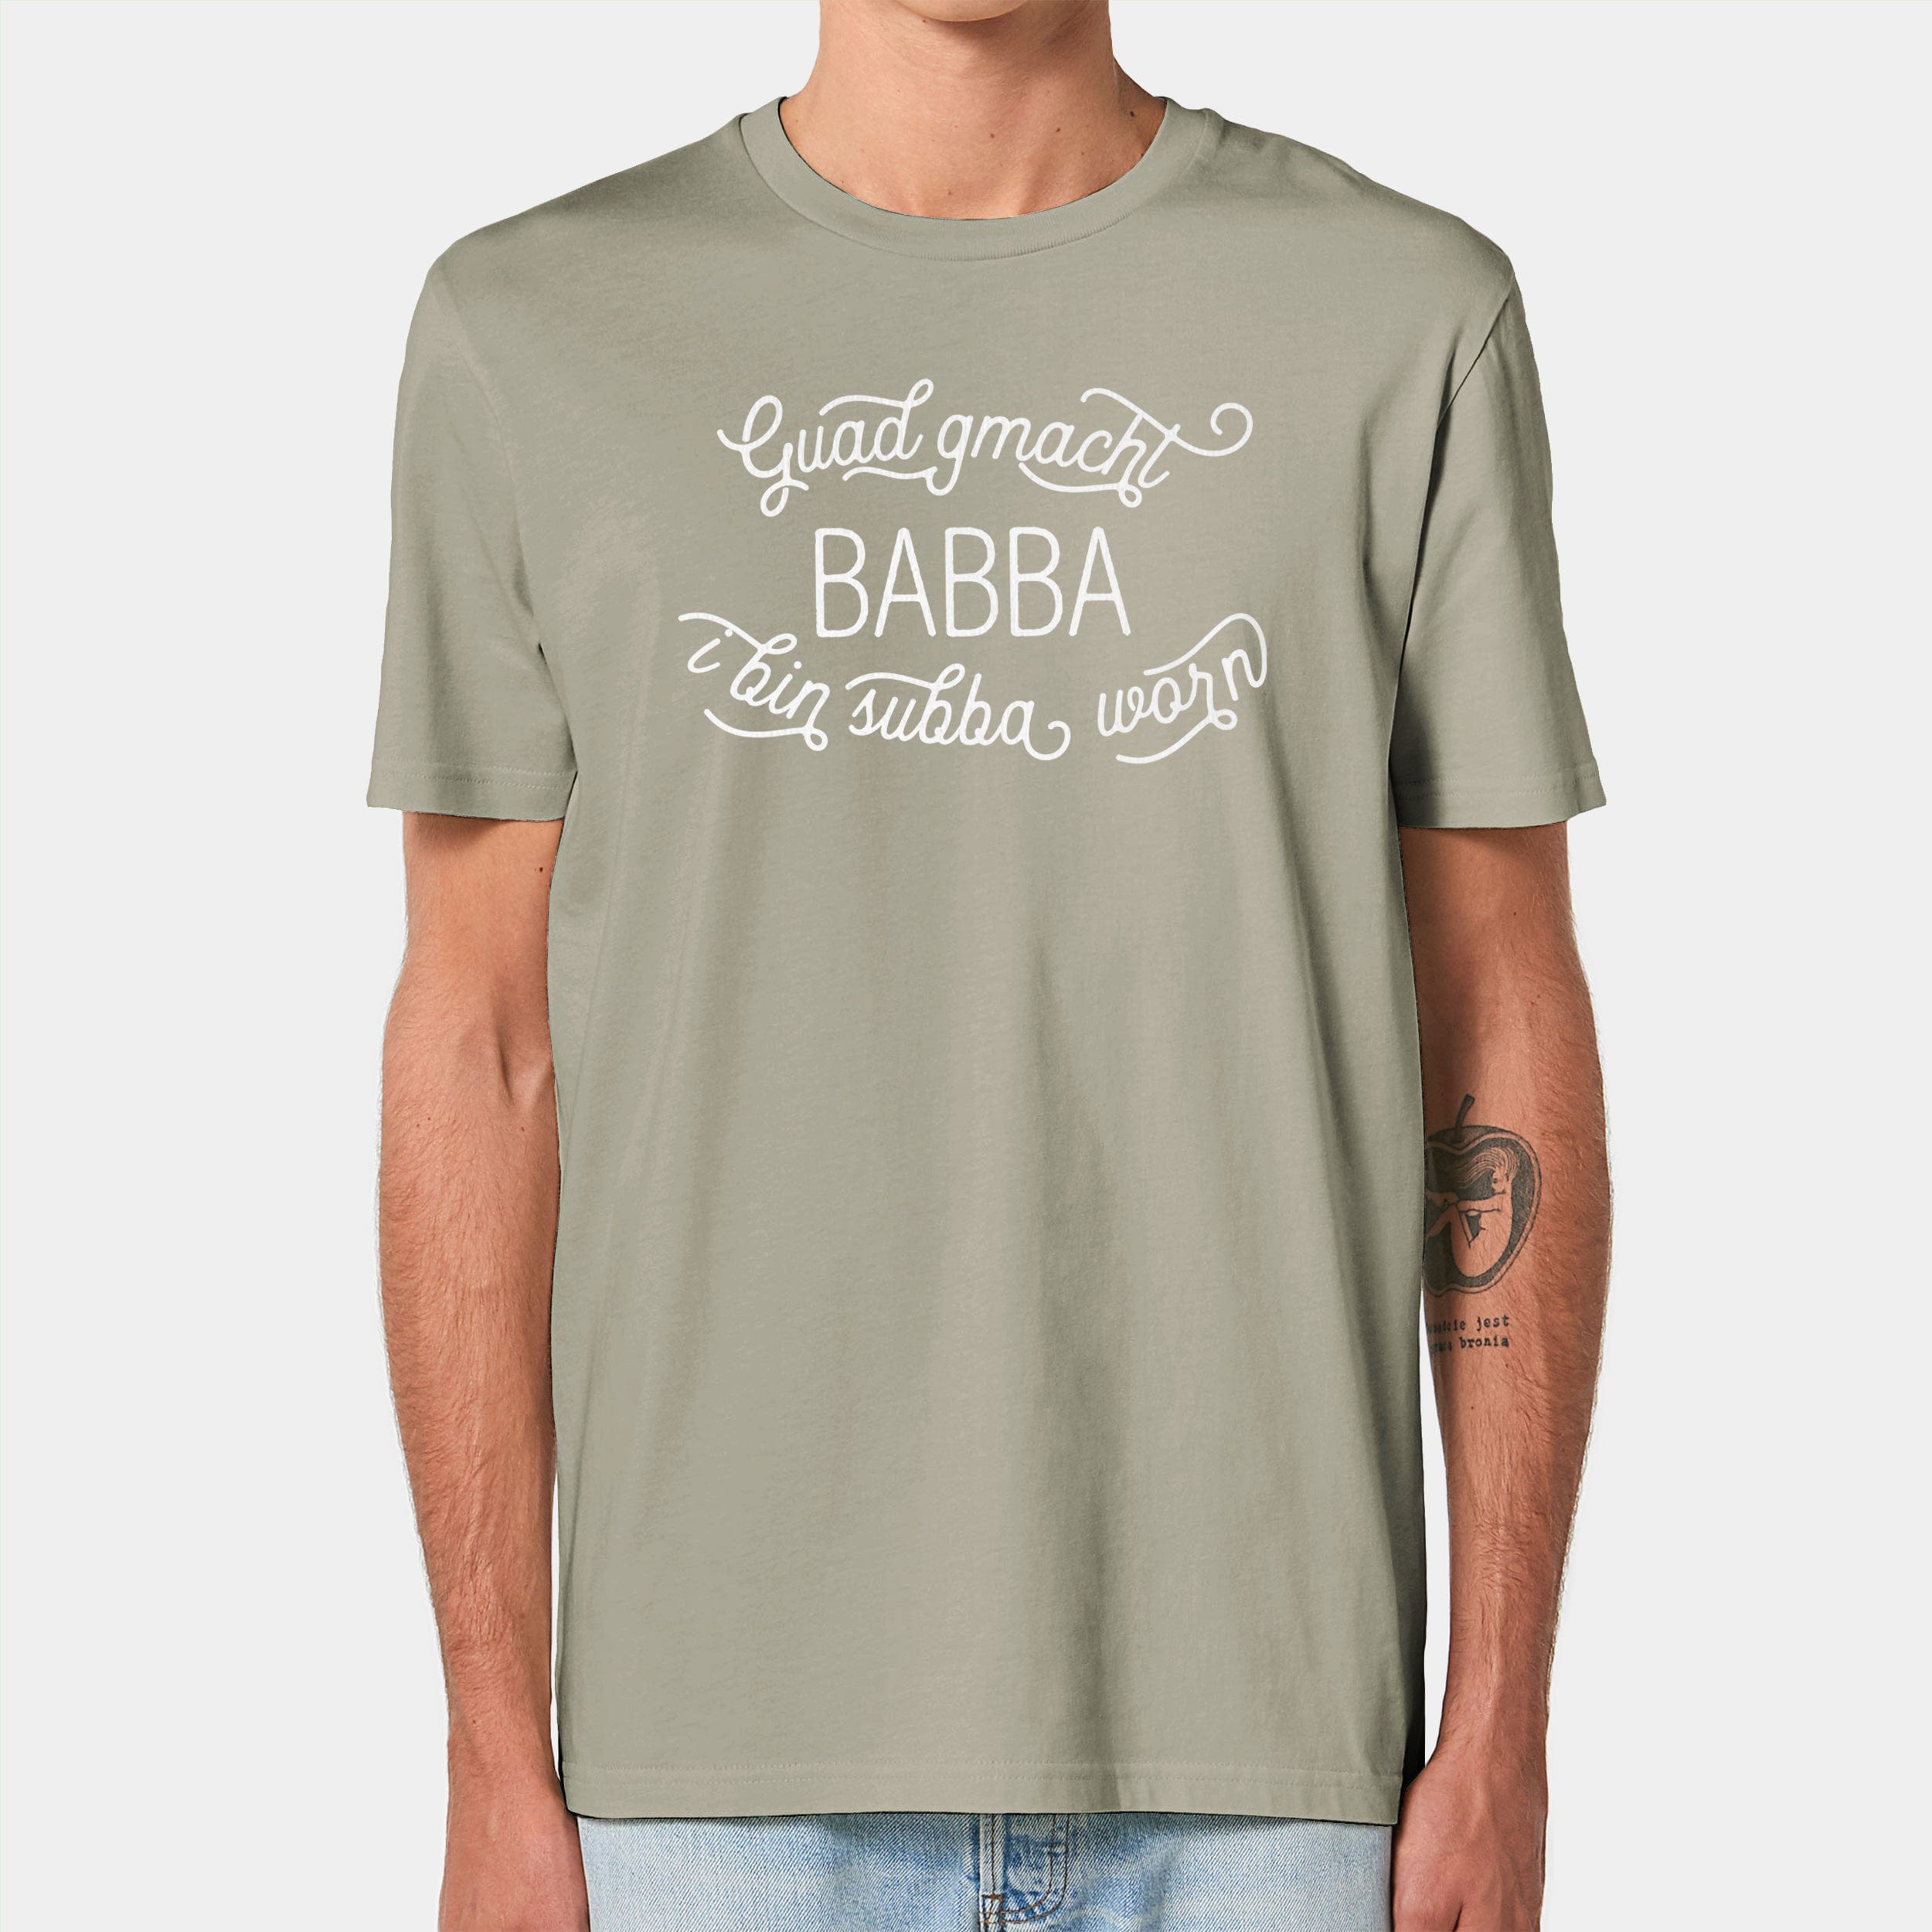 HEITER & LÄSSIG T-Shirt "Guad gmacht Babba" - aus nachhaltiger und fairer Produktion